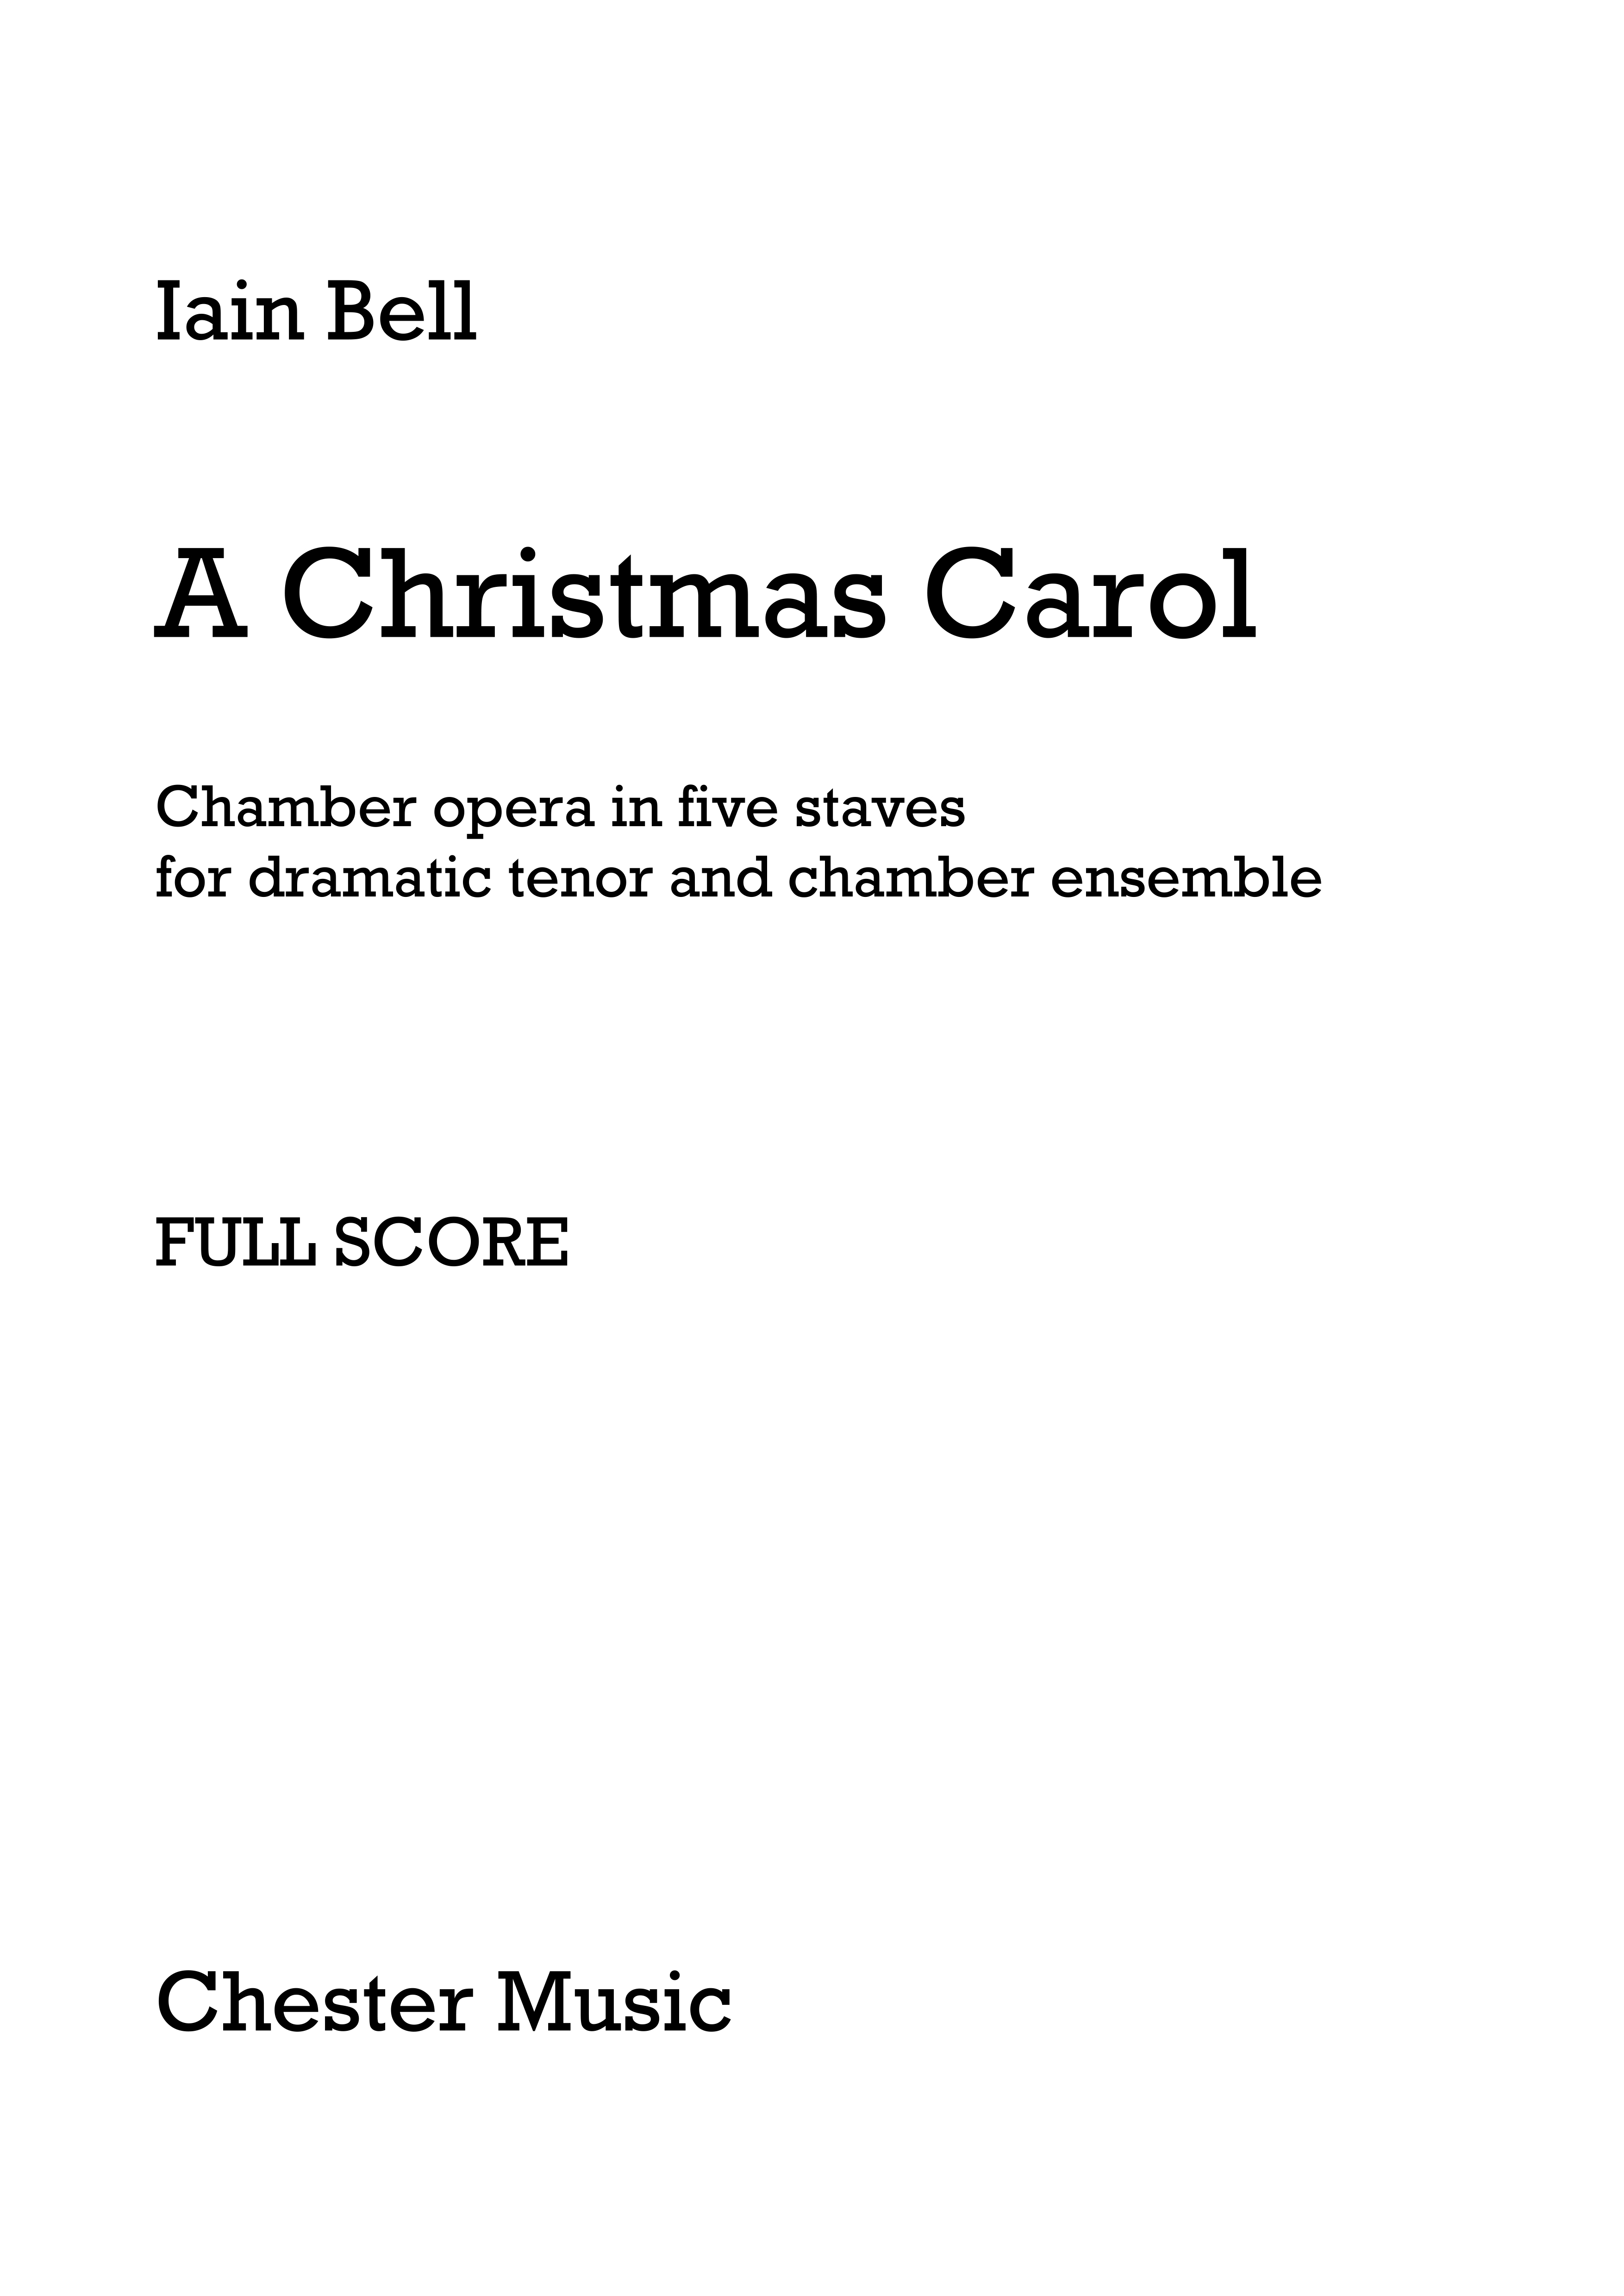 Iain Bell: A Christmas Carol (Full Score): Tenor: Score